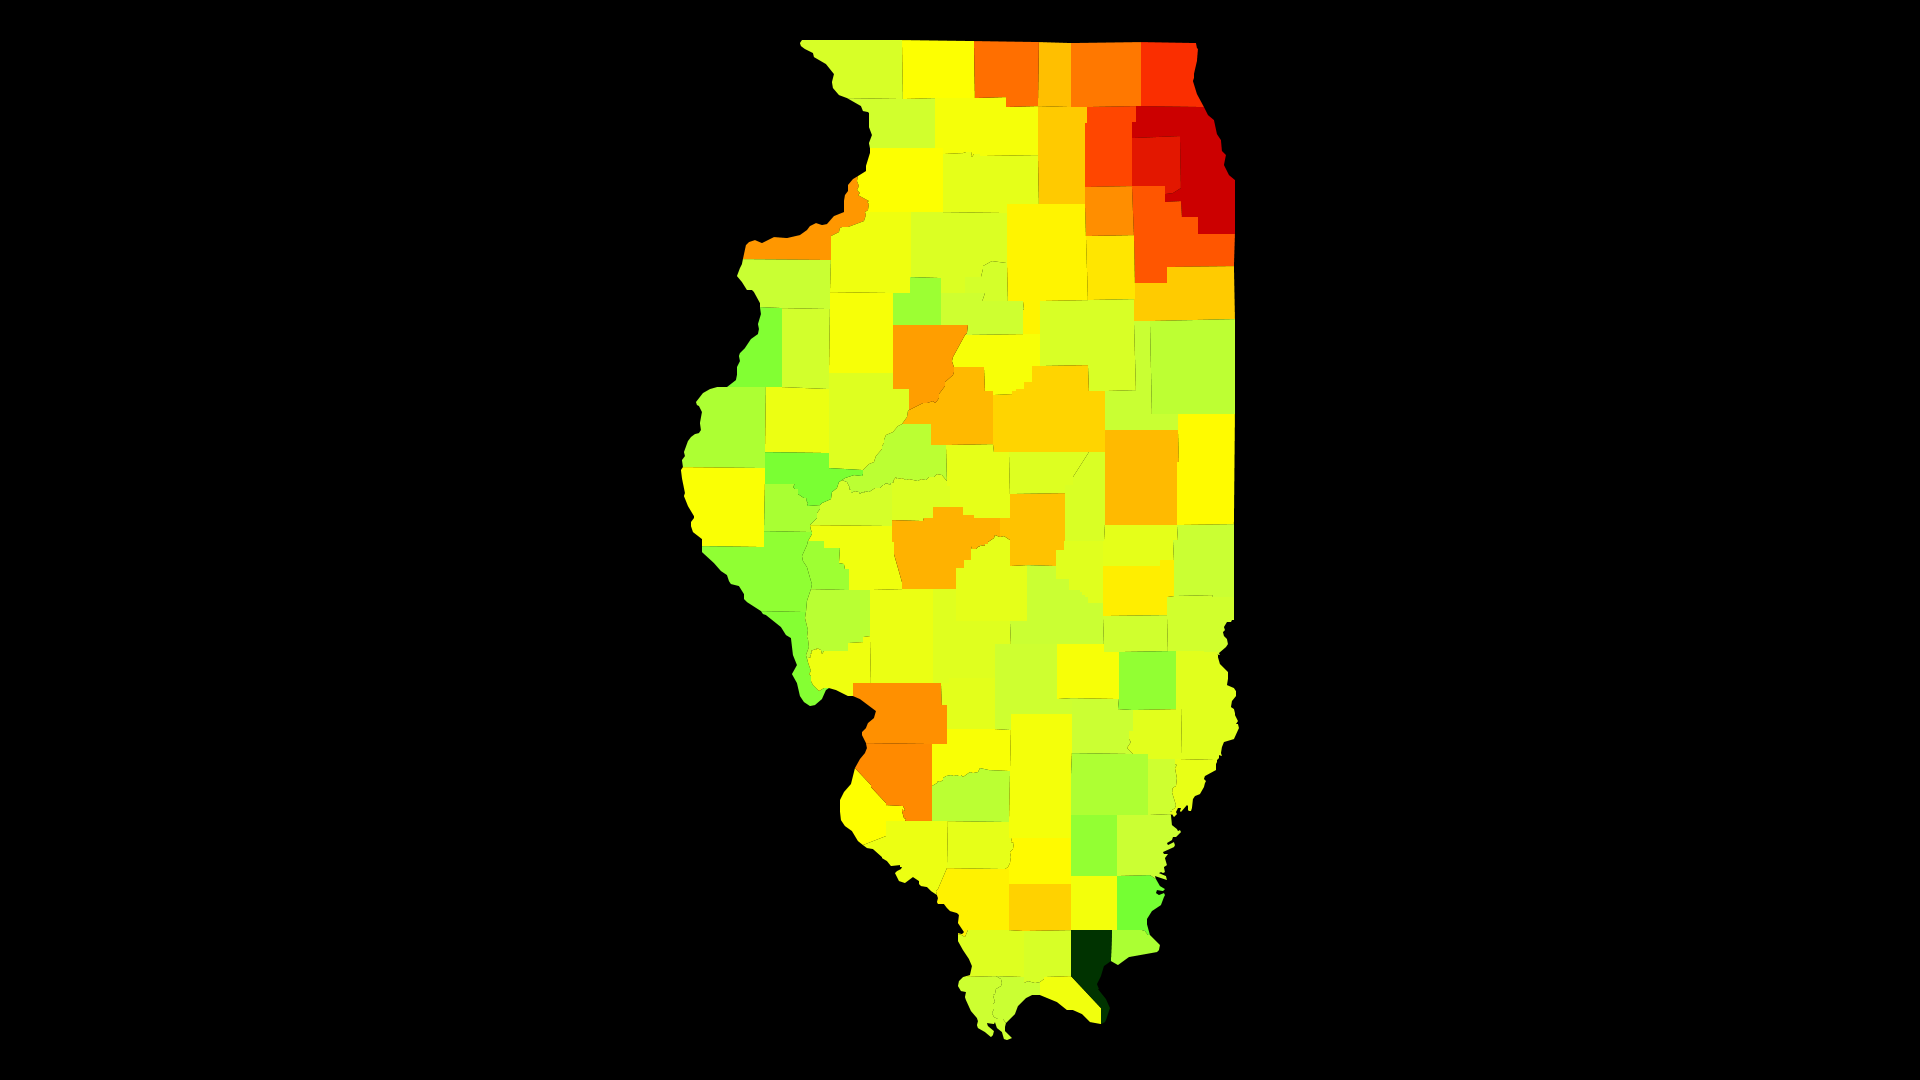 Illinois Population Density